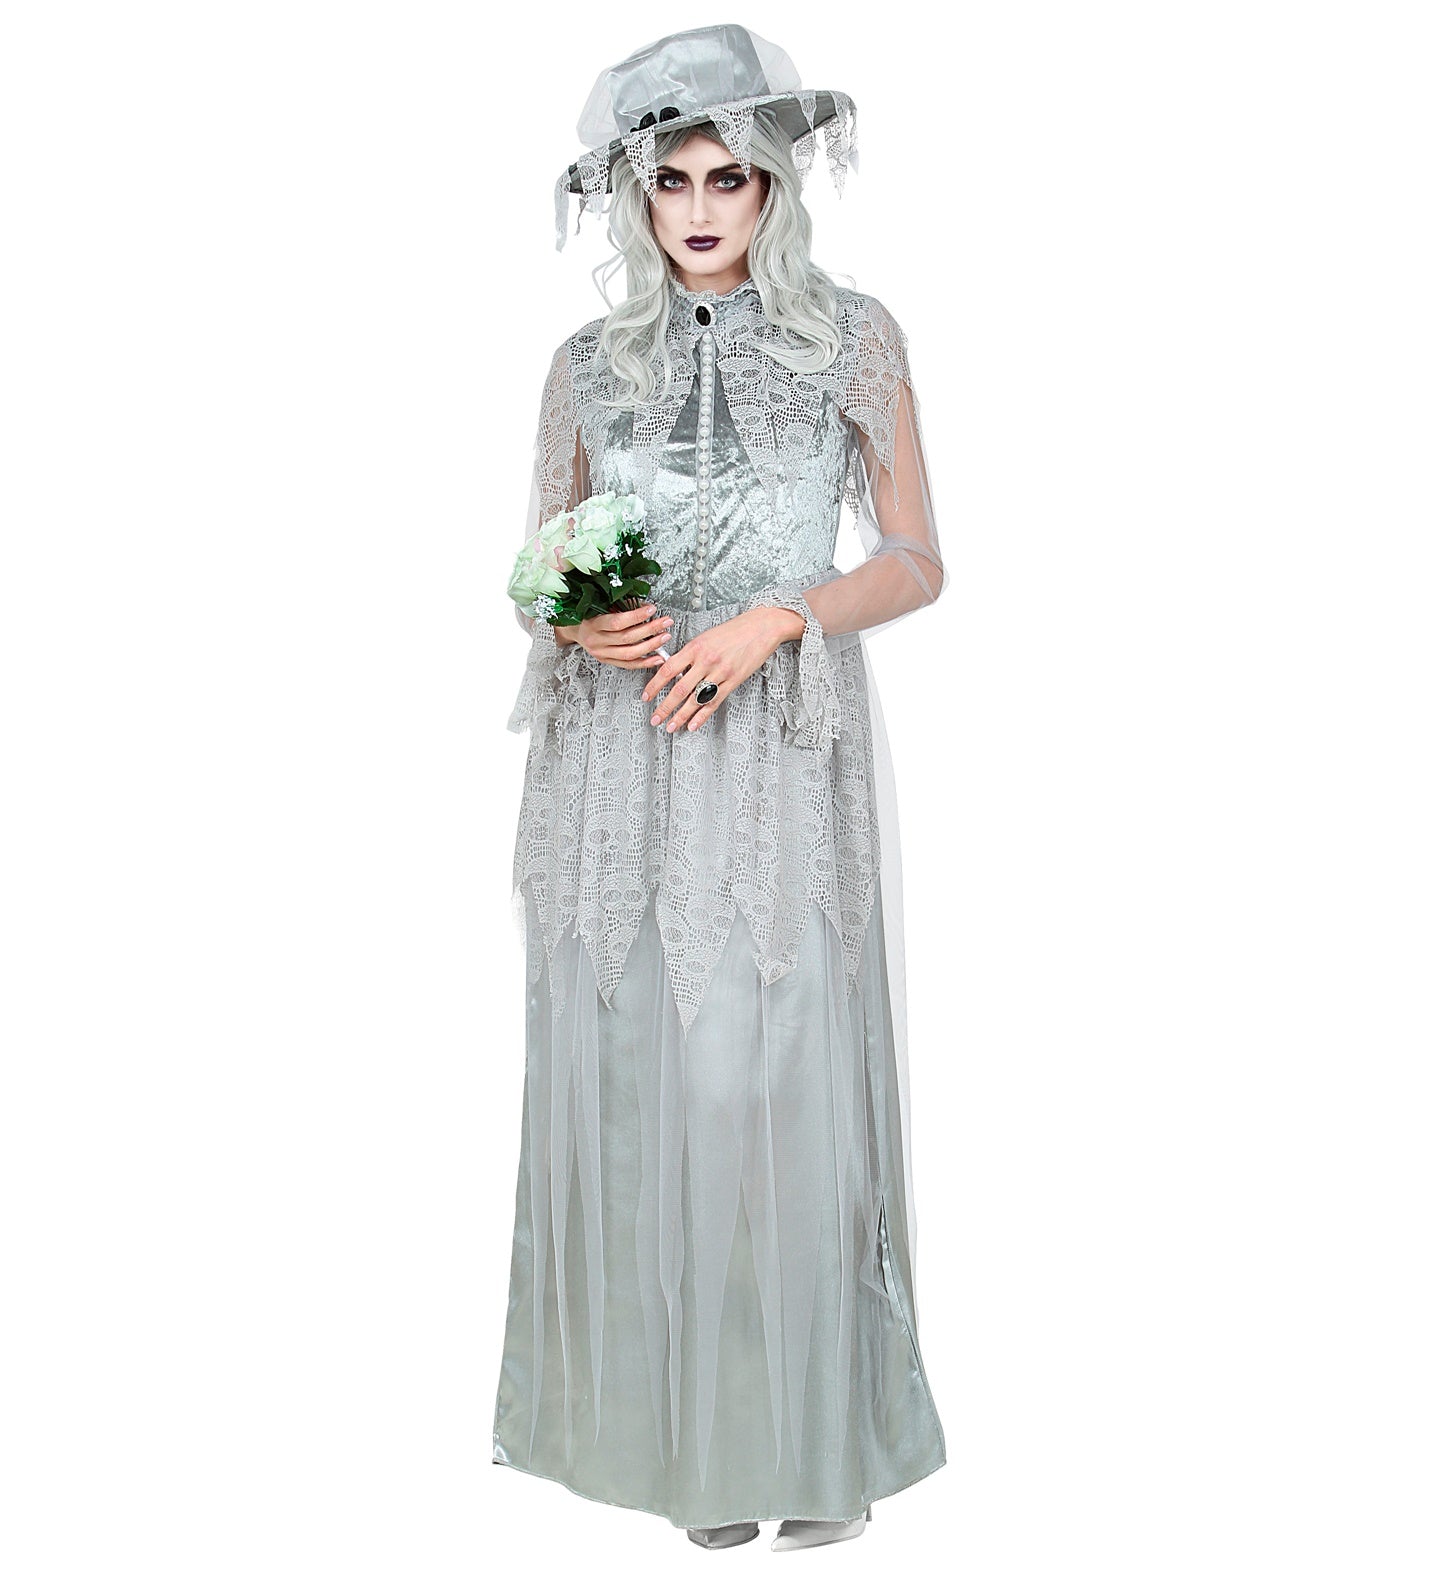 Ghostly Bride Ladies Costume